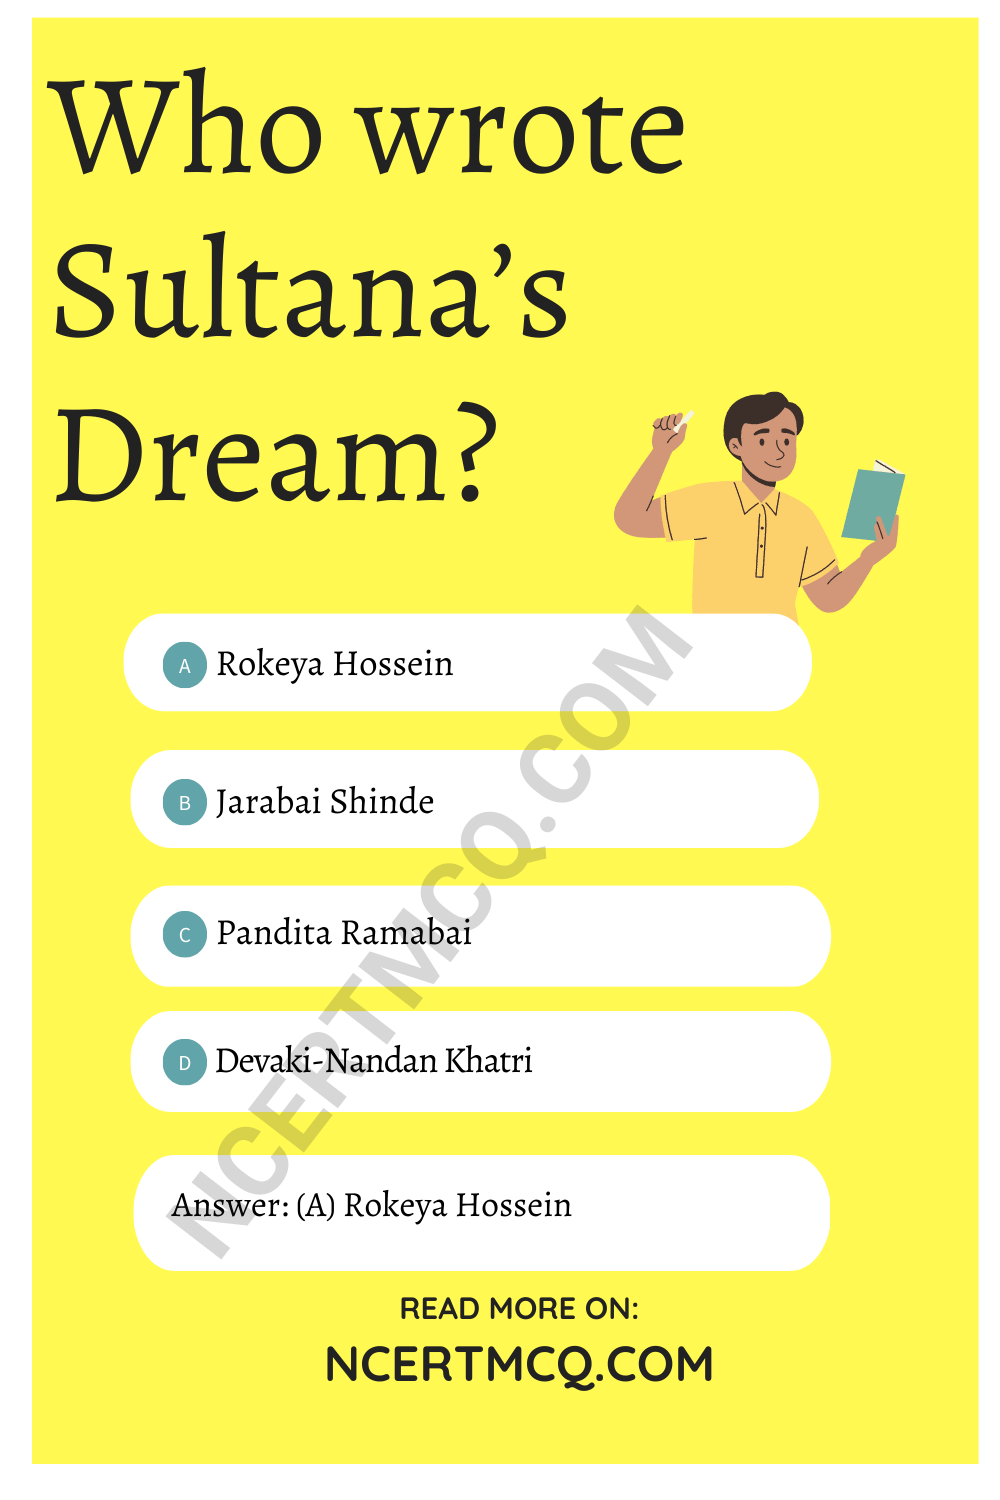 Who wrote Sultana’s Dream?